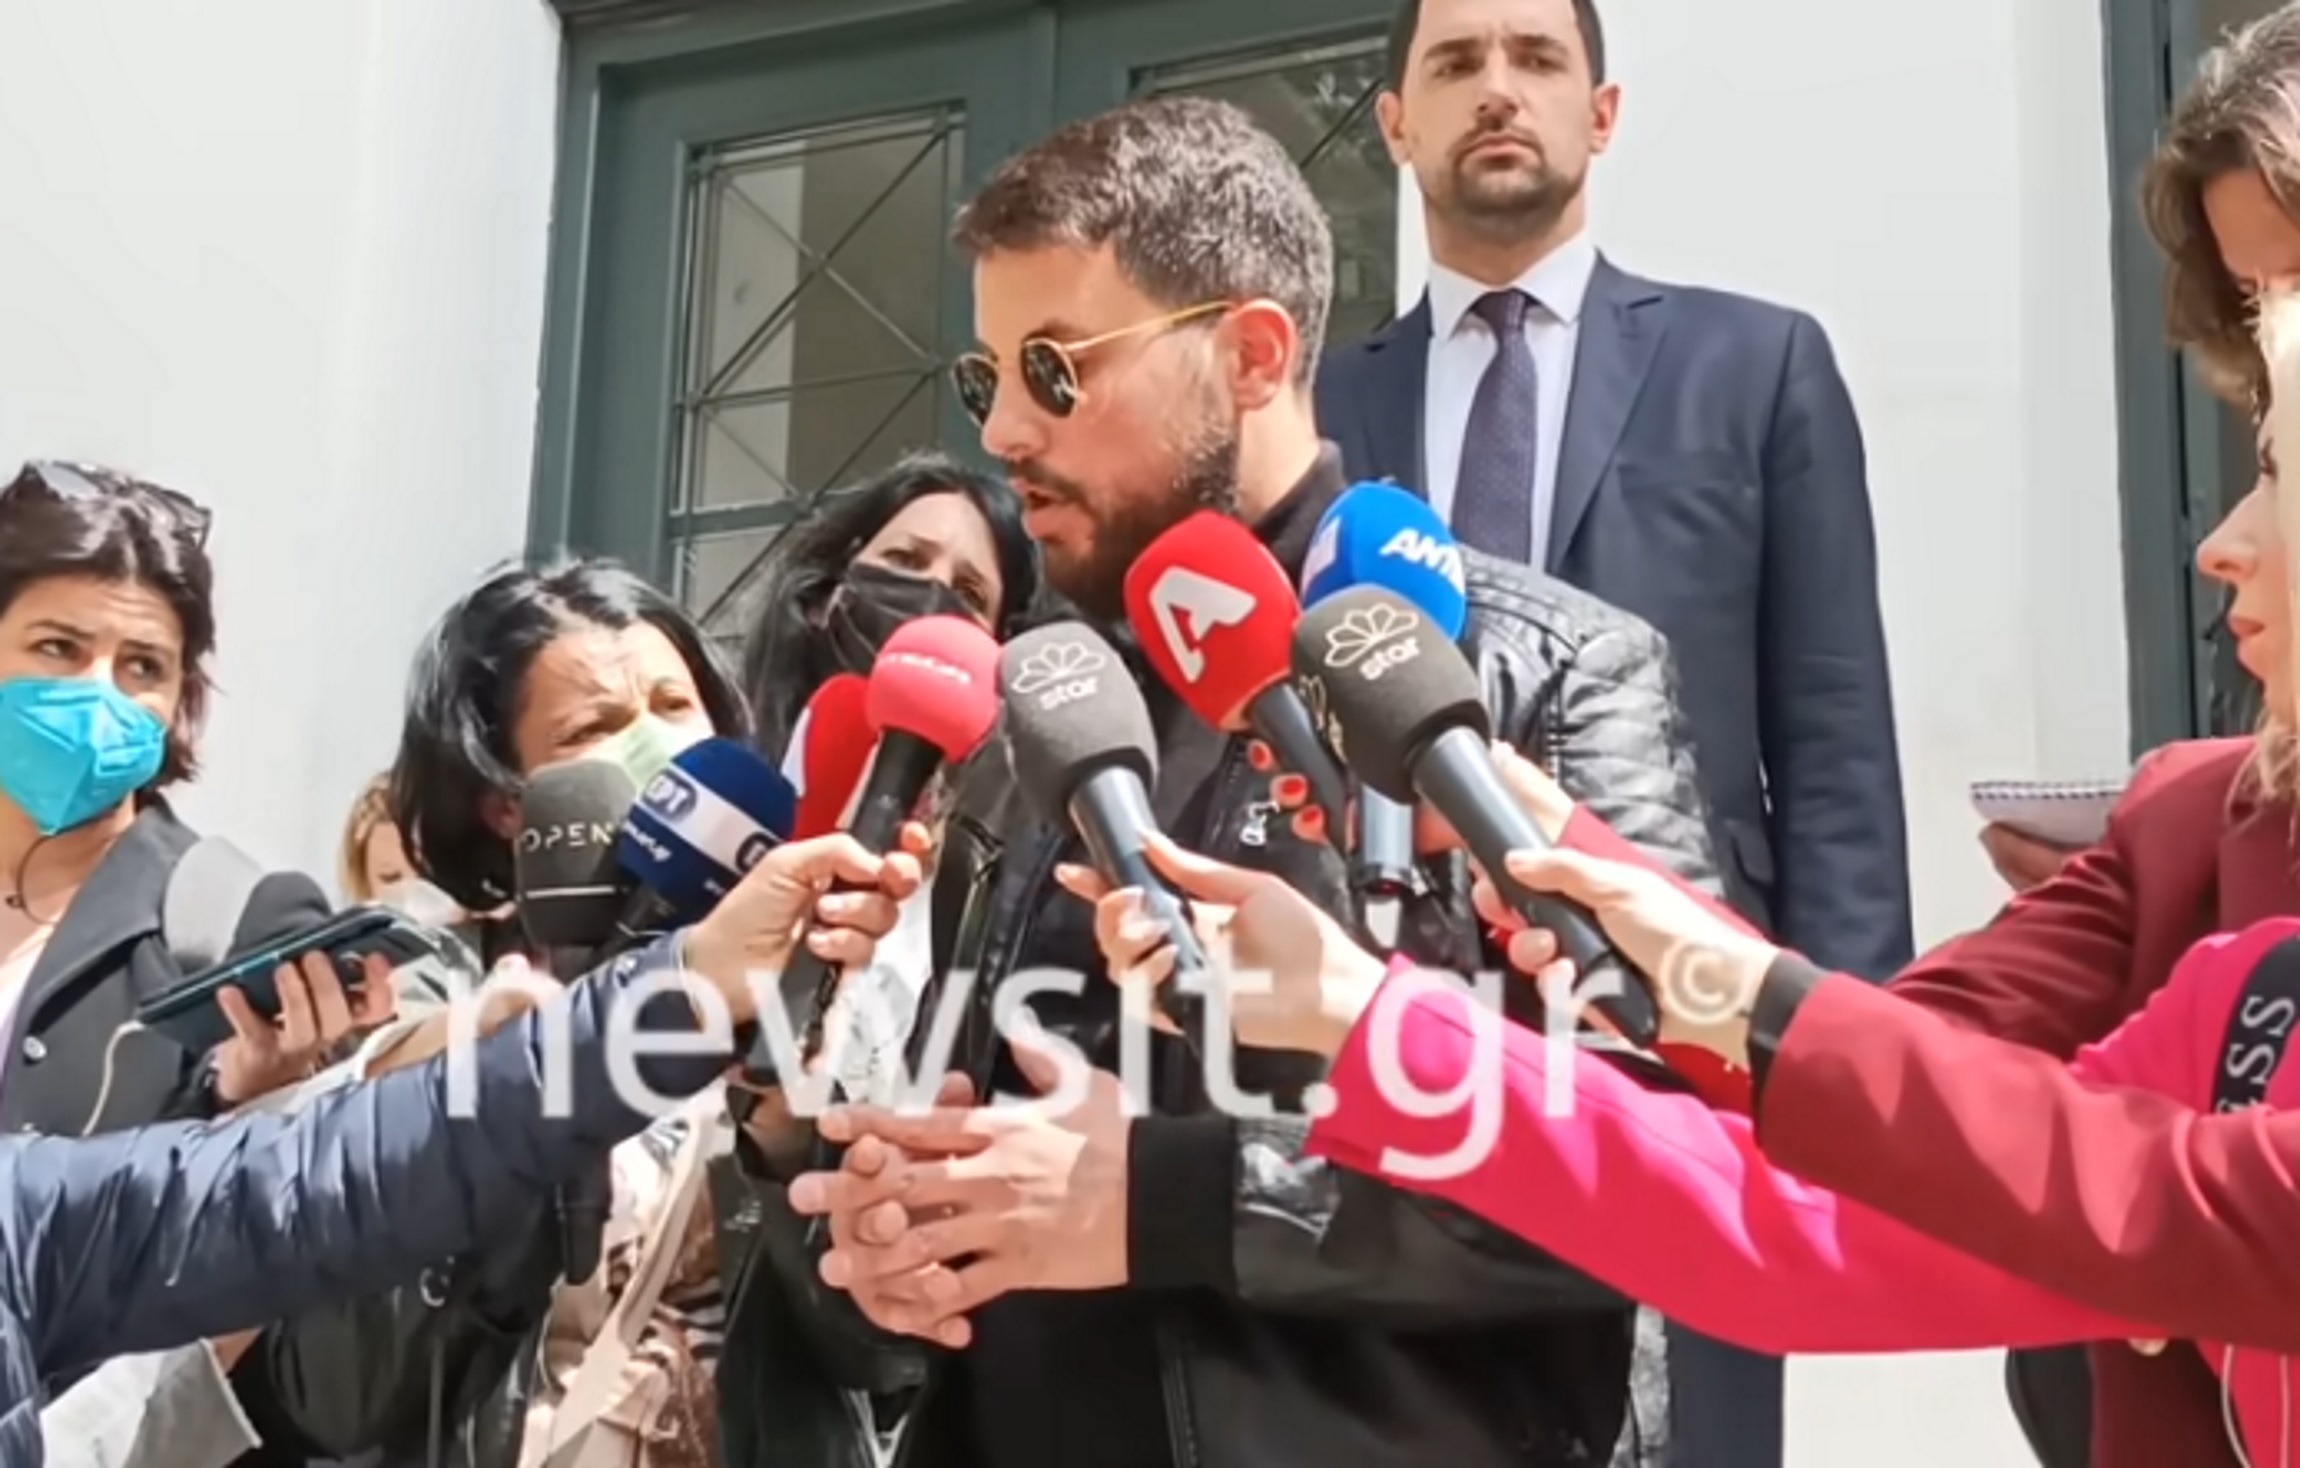 Μάνος Δασκαλάκης: Το Twitter τον «δίκασε» για την εμφάνισή του στα δικαστήρια